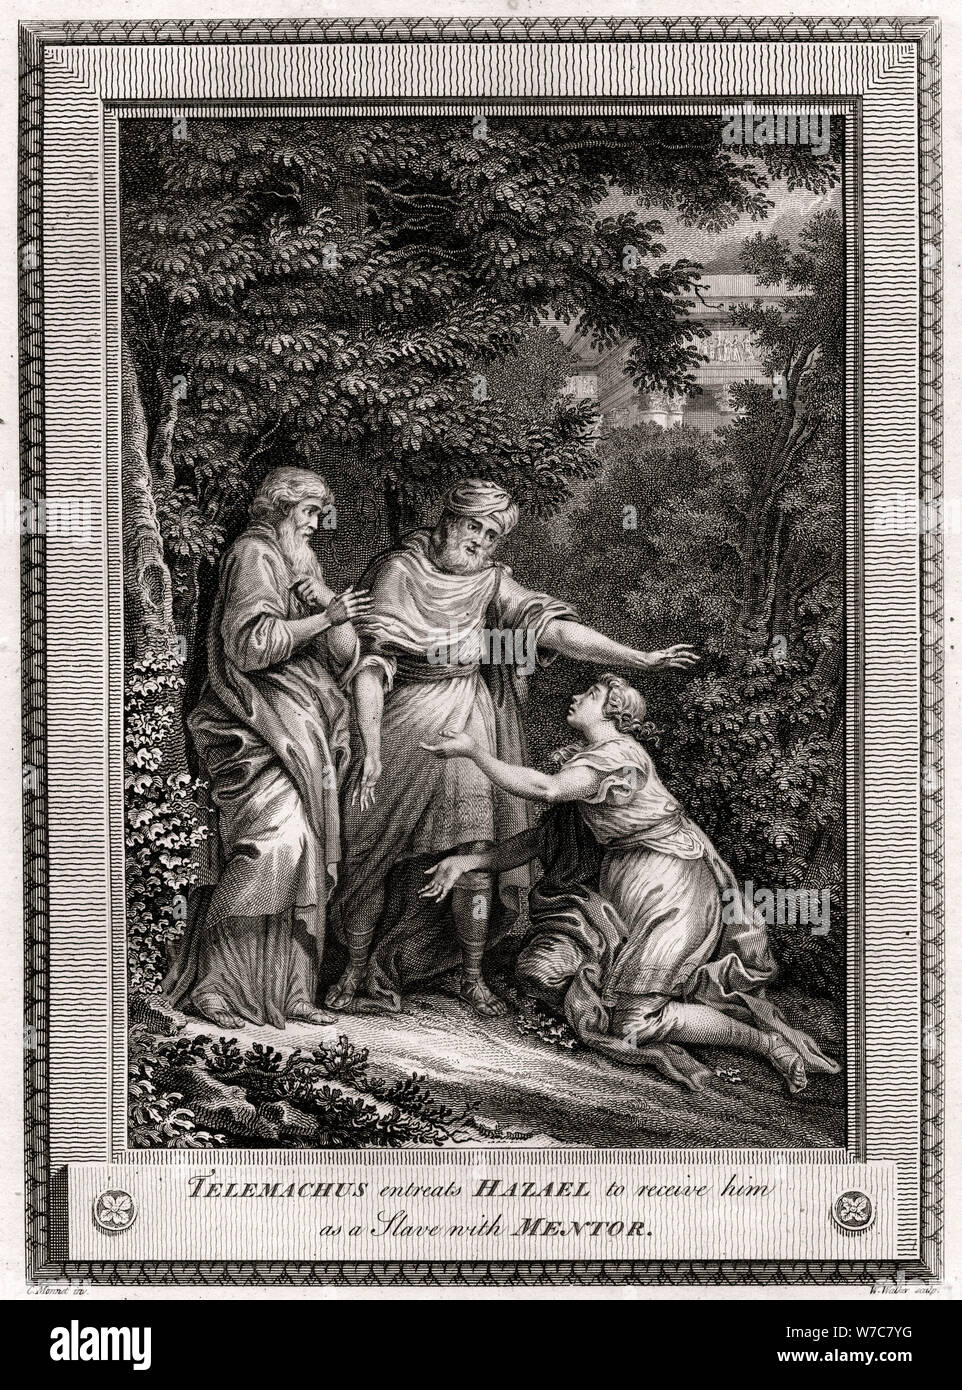 "Telemaco supplica Hazael a riceverlo come slave con il Mentor", 1775. Artista: W Walker Foto Stock